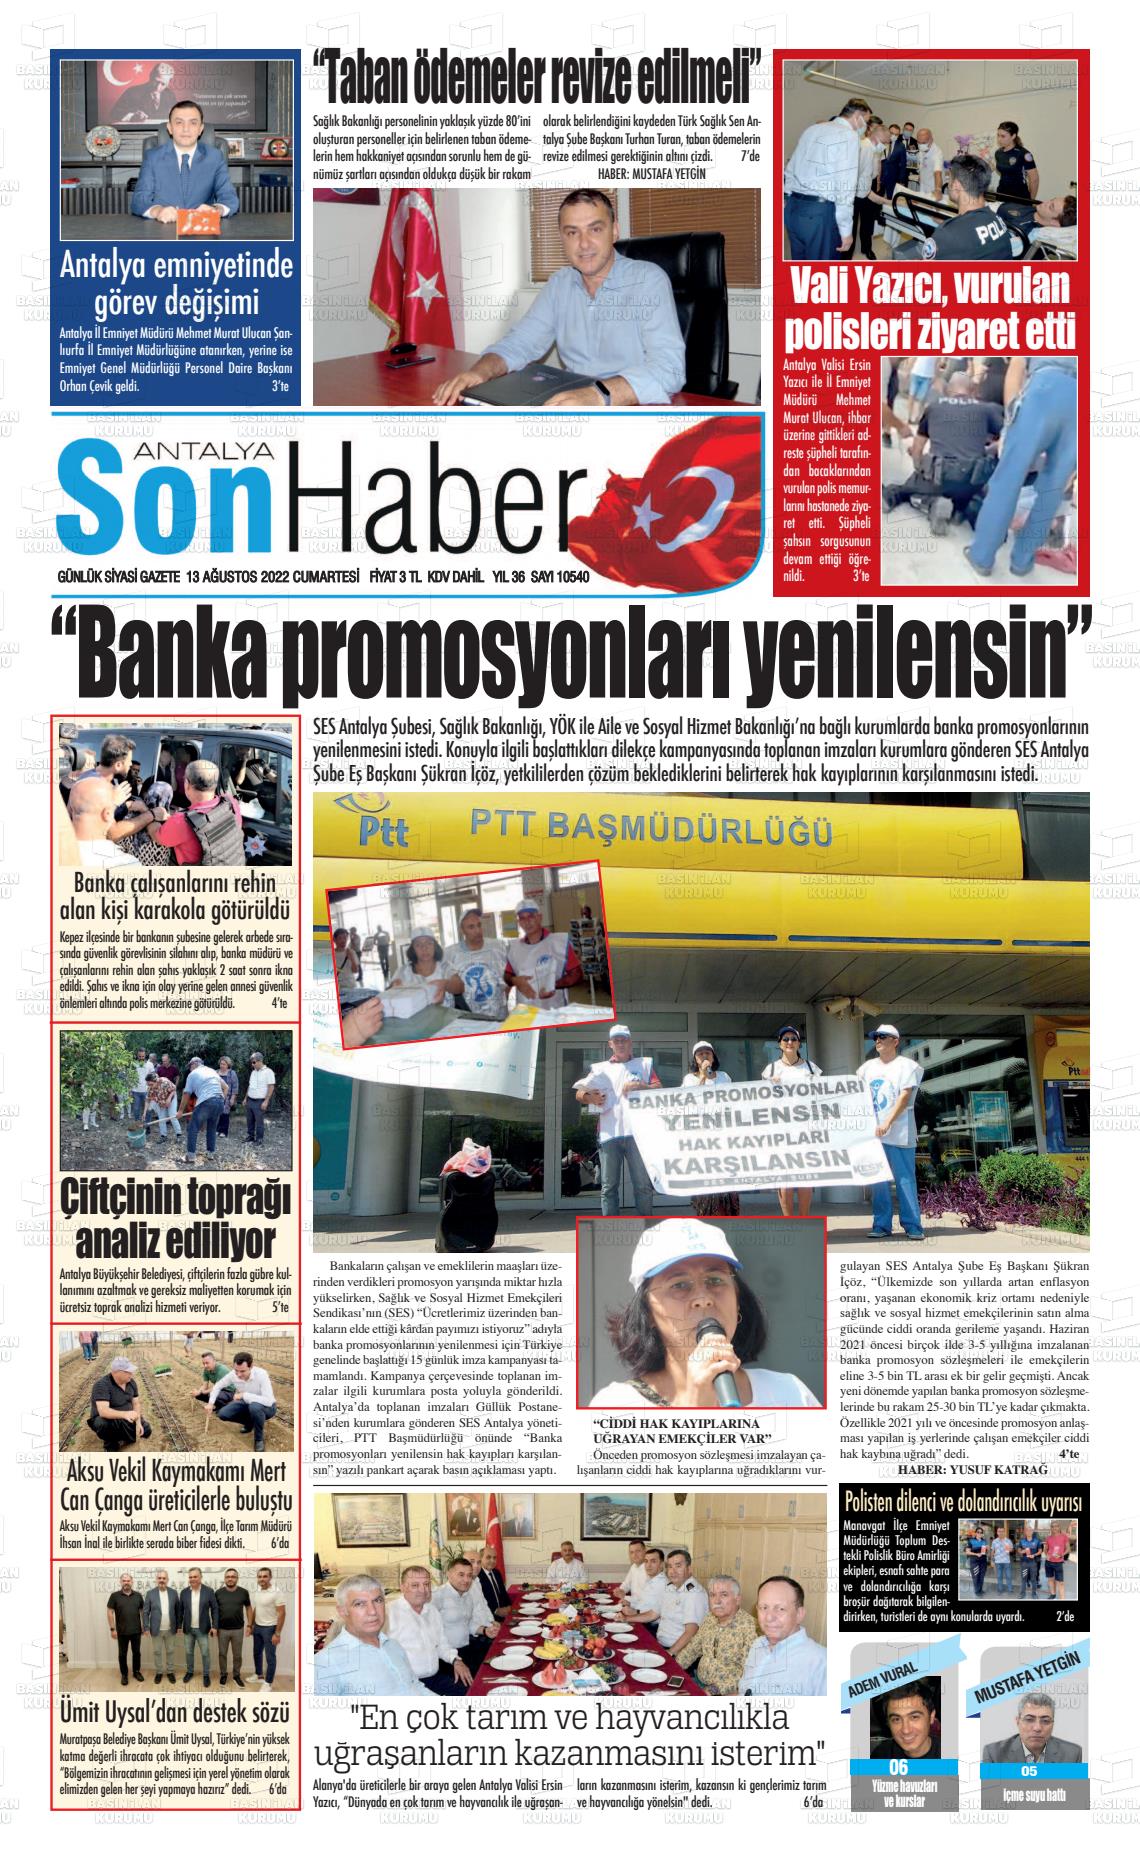 13 Ağustos 2022 Antalya Son Haber Gazete Manşeti